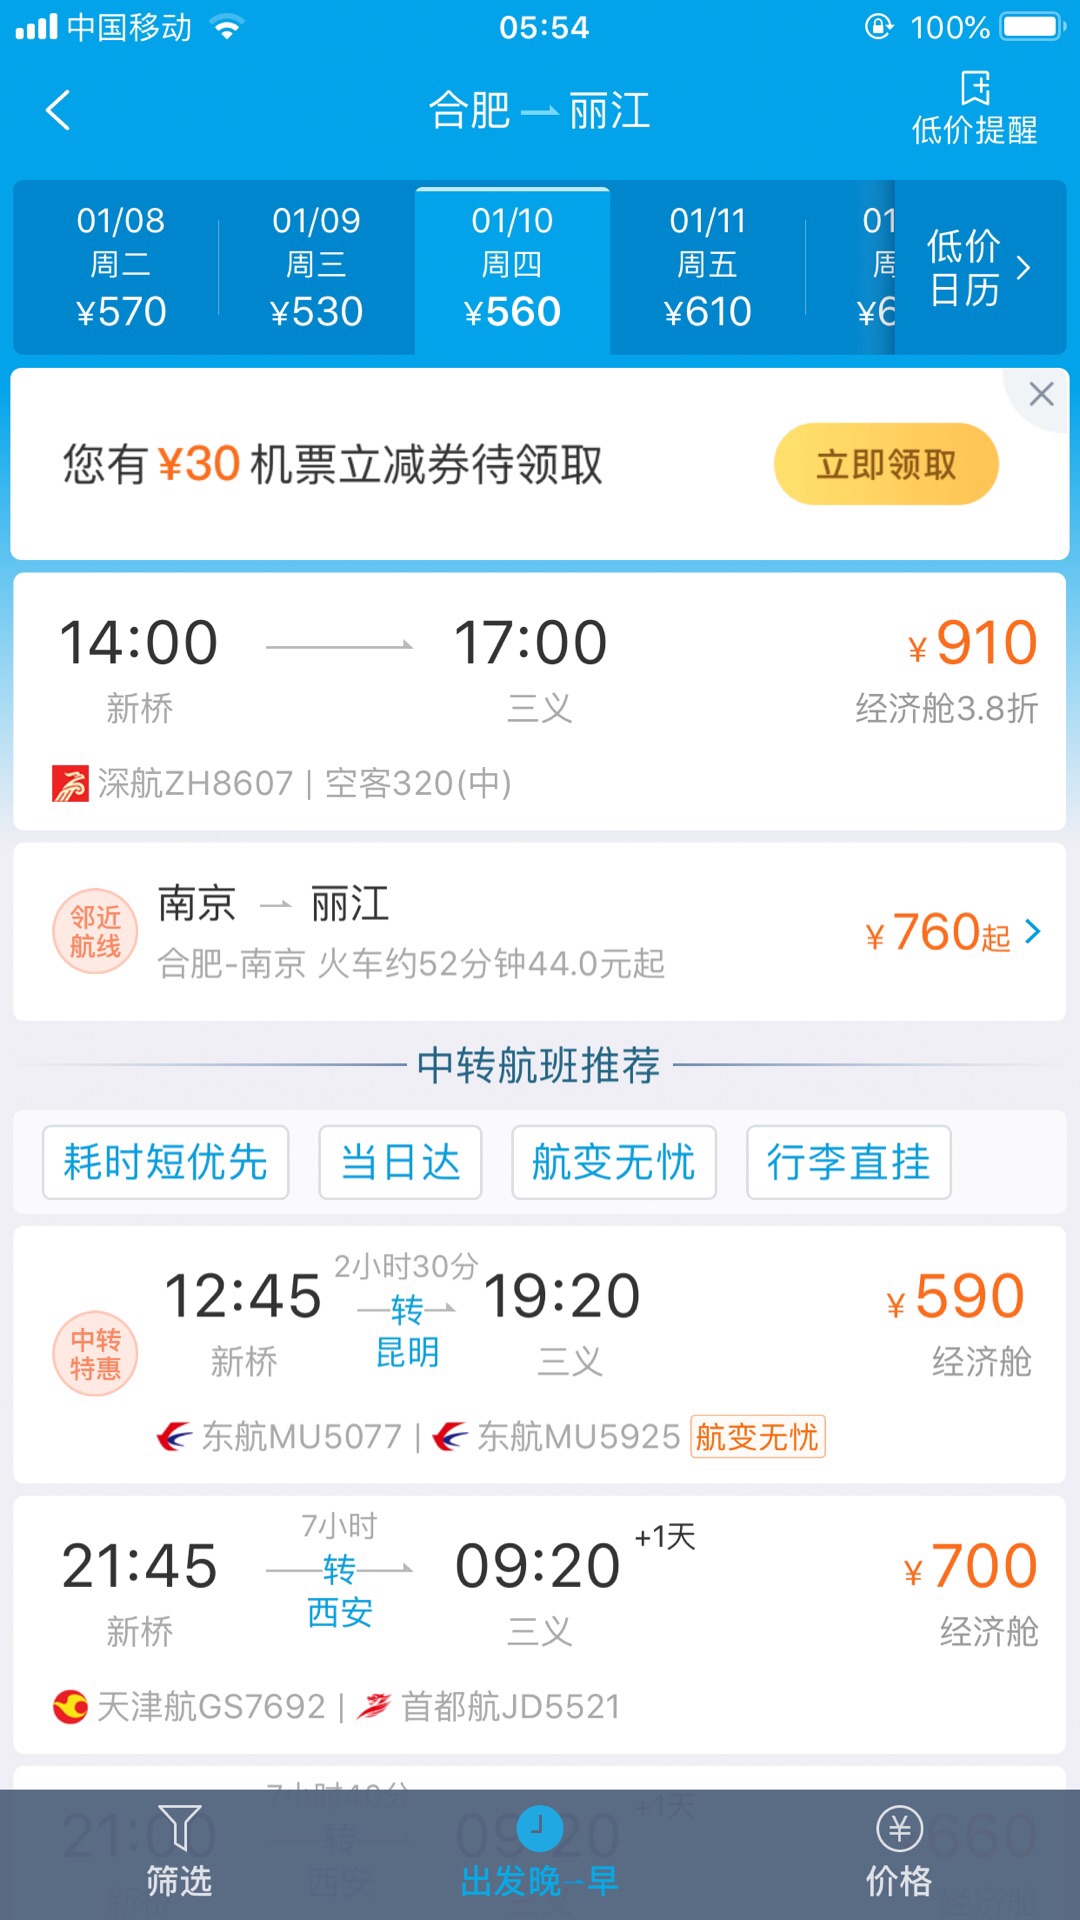 赣州至重庆飞机票价格是多少钱 赣州至重庆飞机票价格是多少钱一张